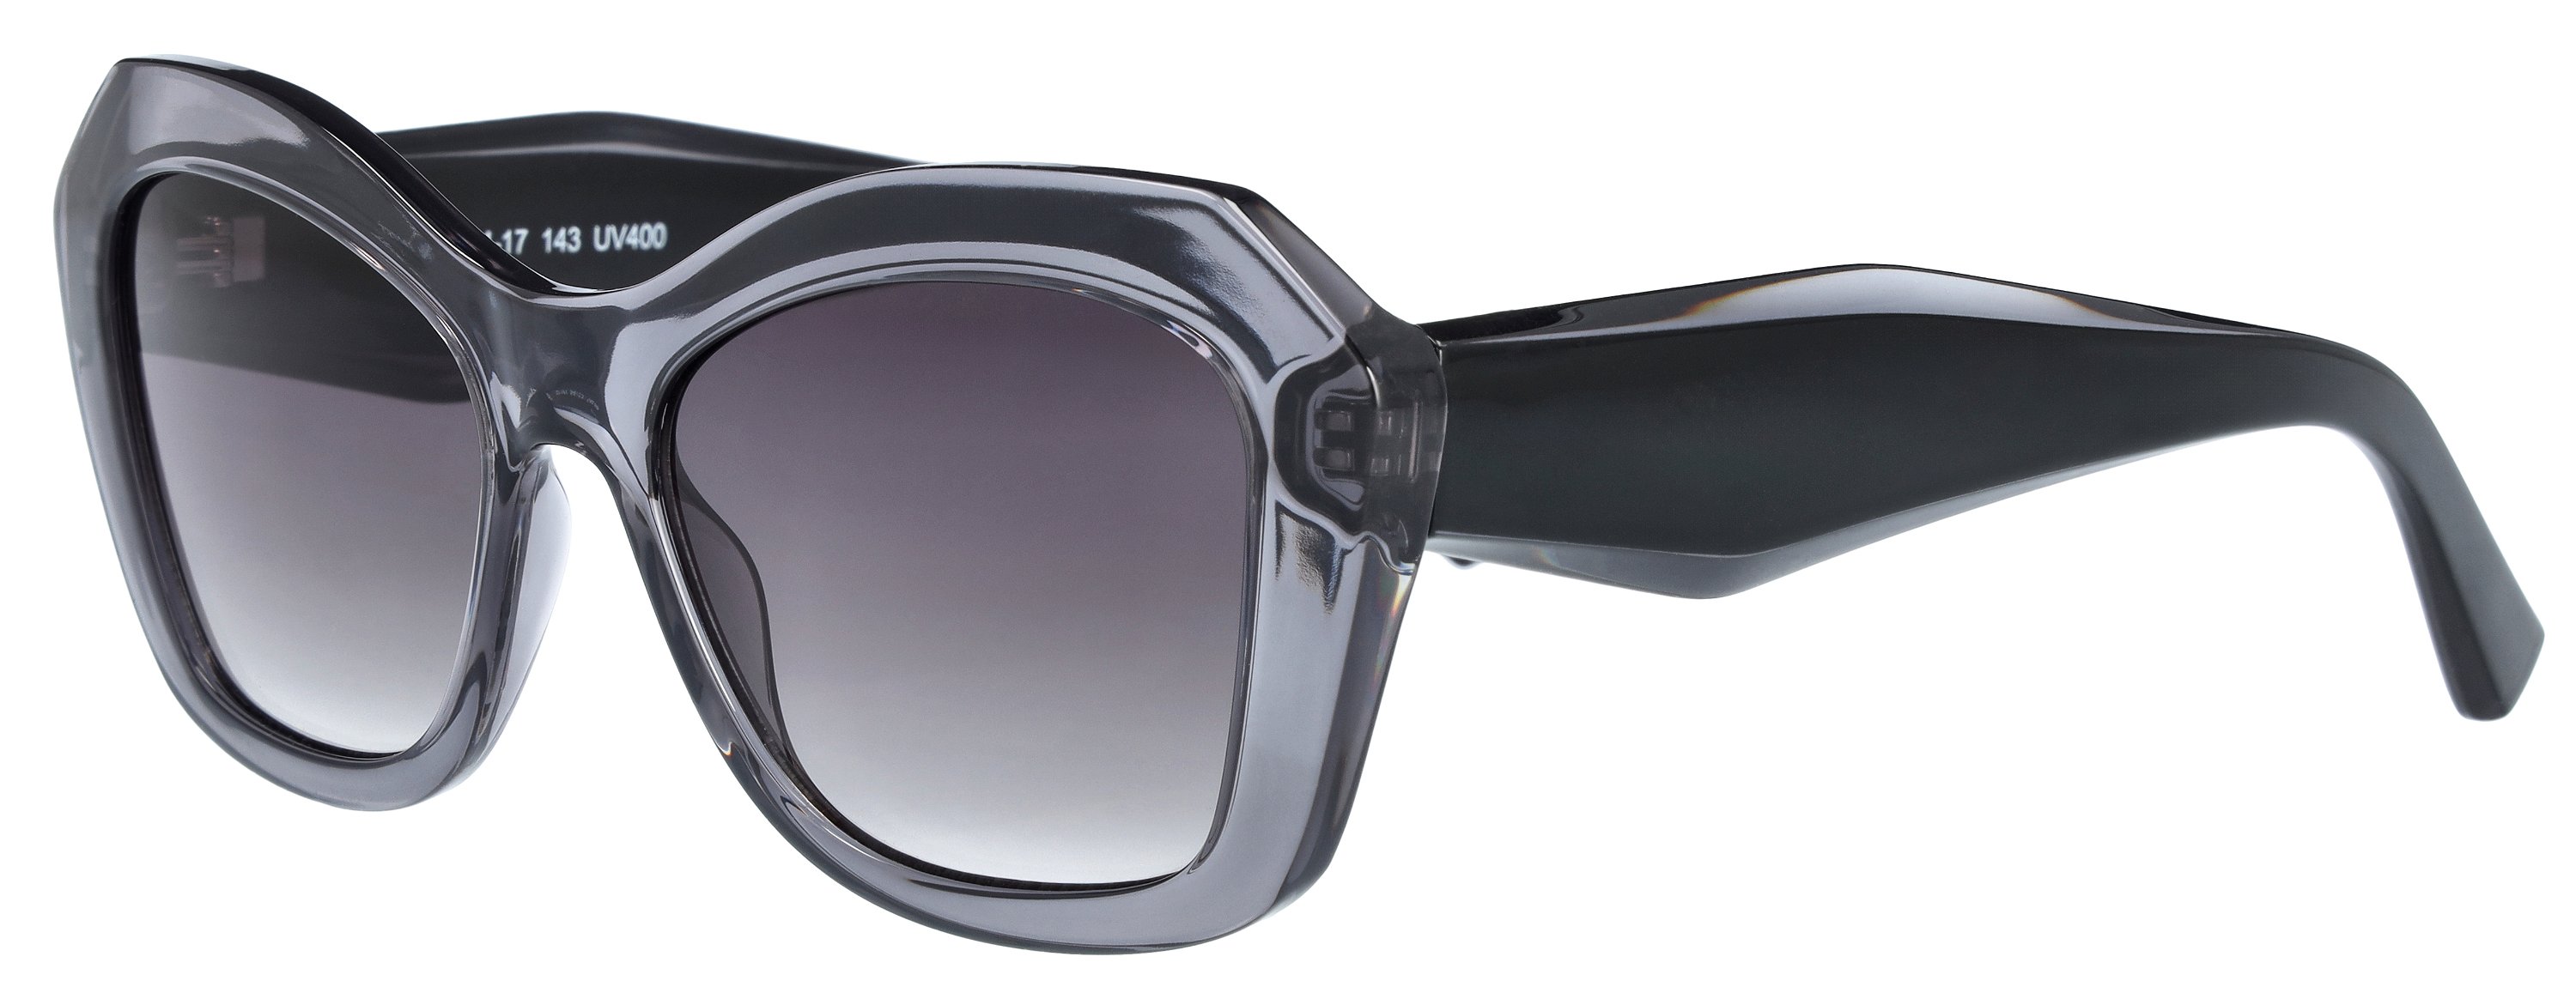 Das Bild zeigt die Sonnenbrille 721141 von der Marke Abele Optik in grau.